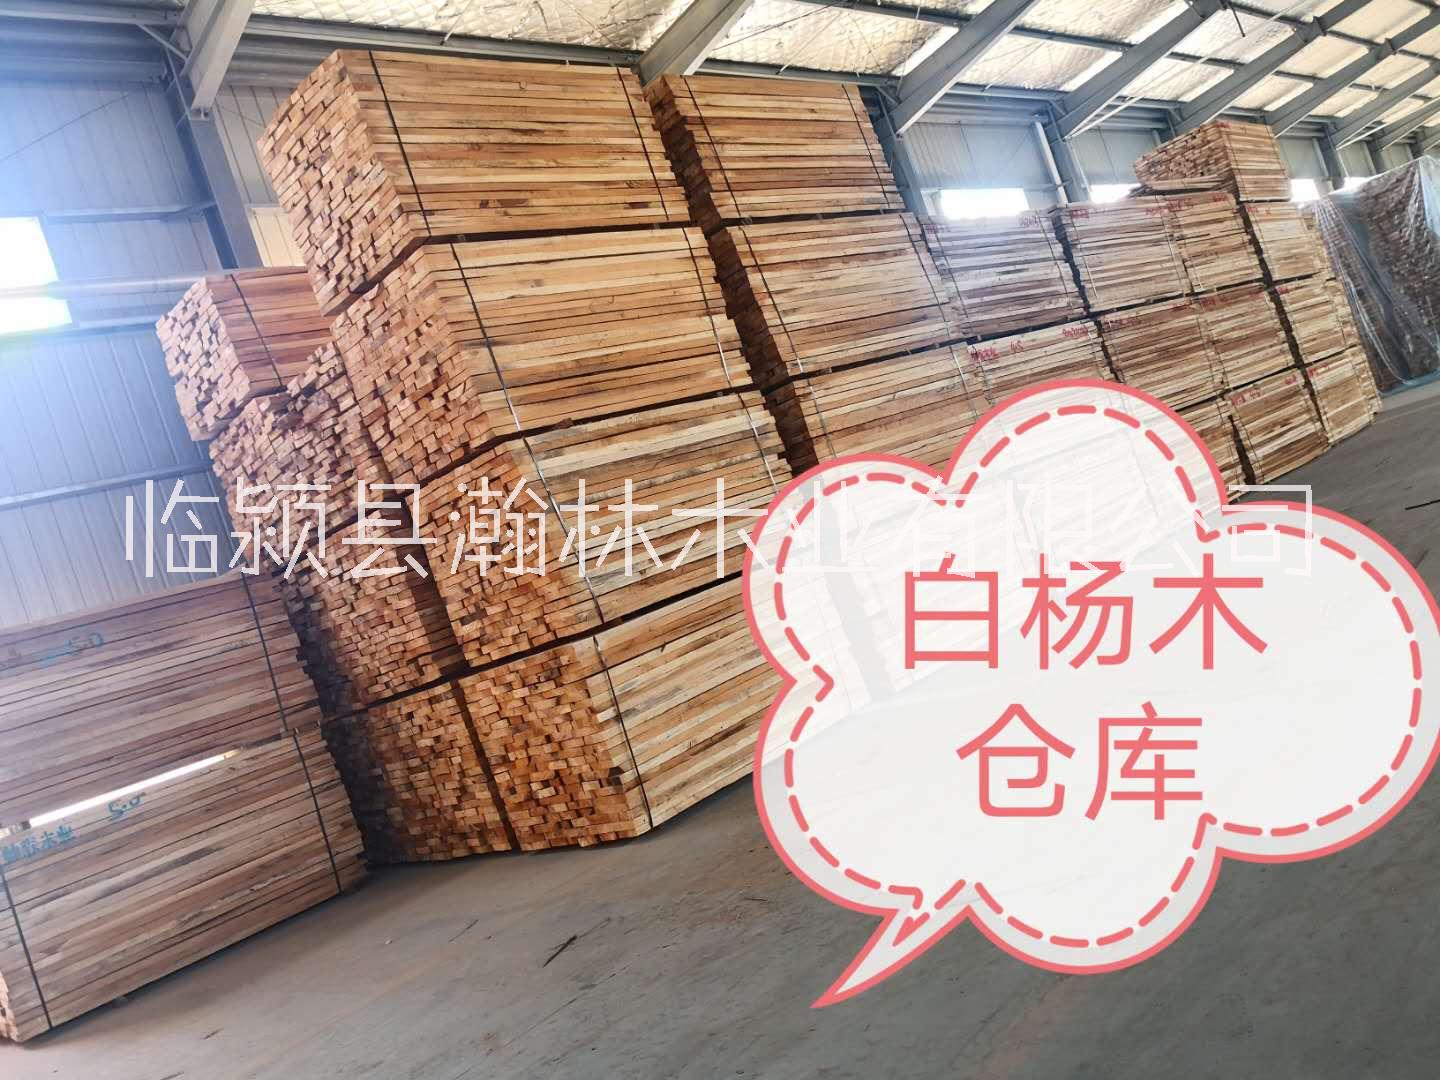 白杨木临颍县瀚林木业有限公司大量生产加工白杨木烘干板材实木拼板